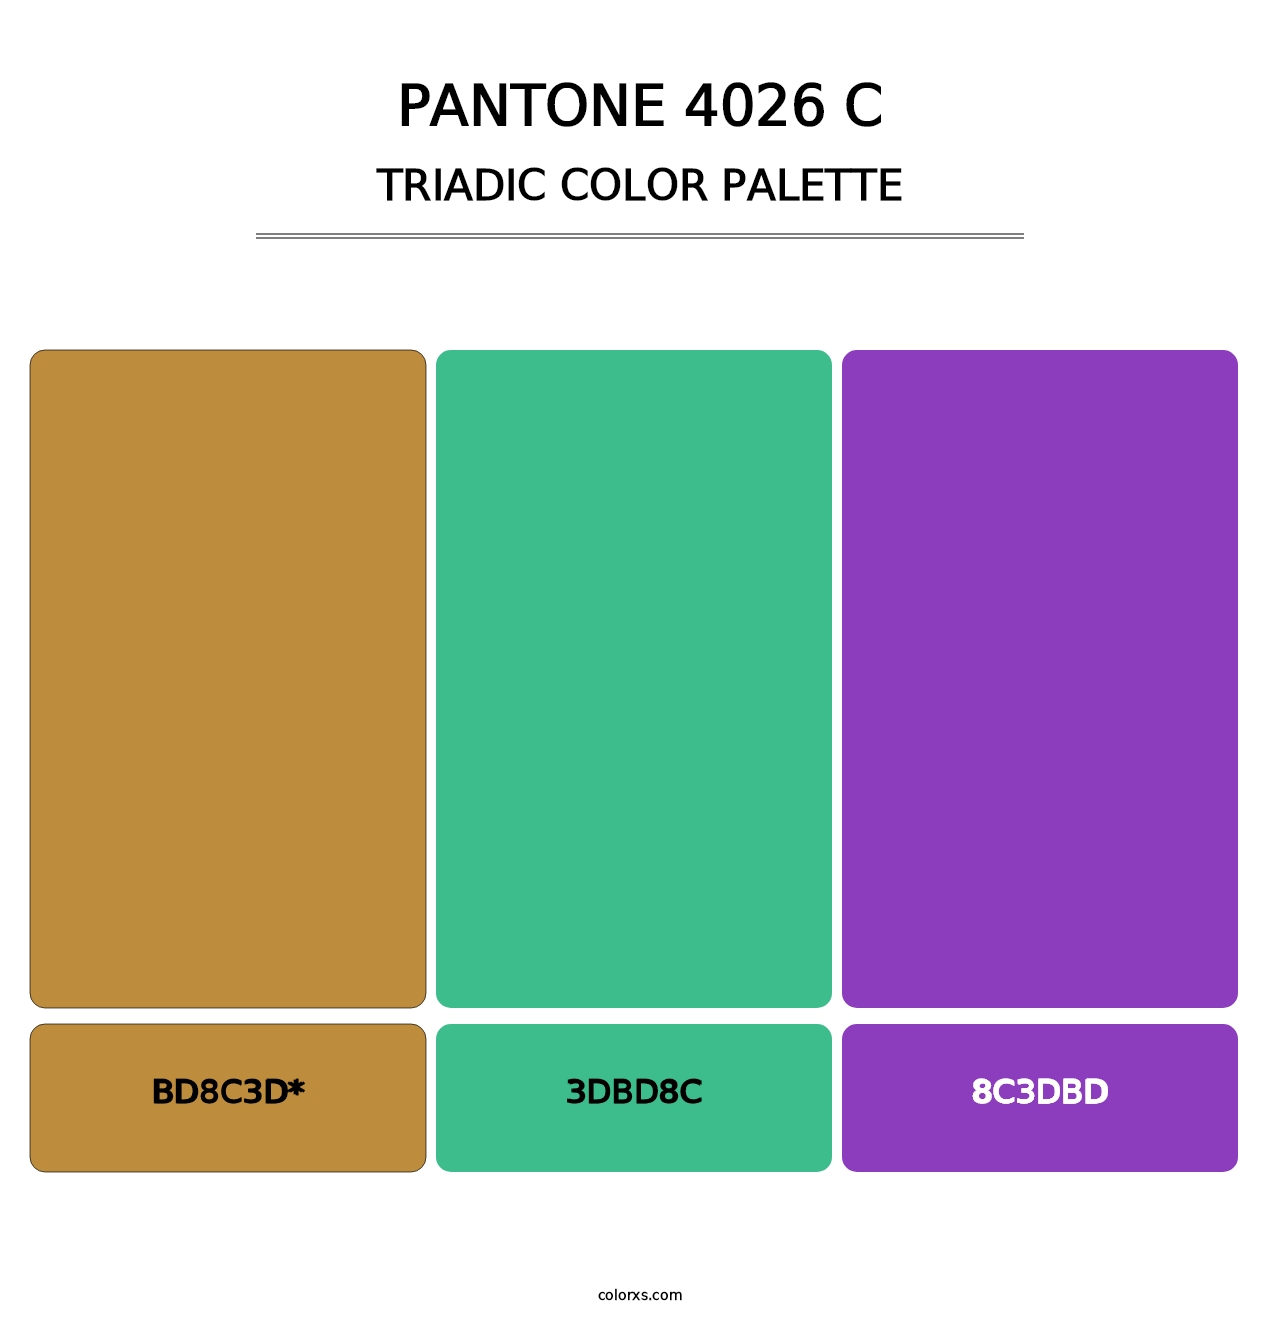 PANTONE 4026 C - Triadic Color Palette